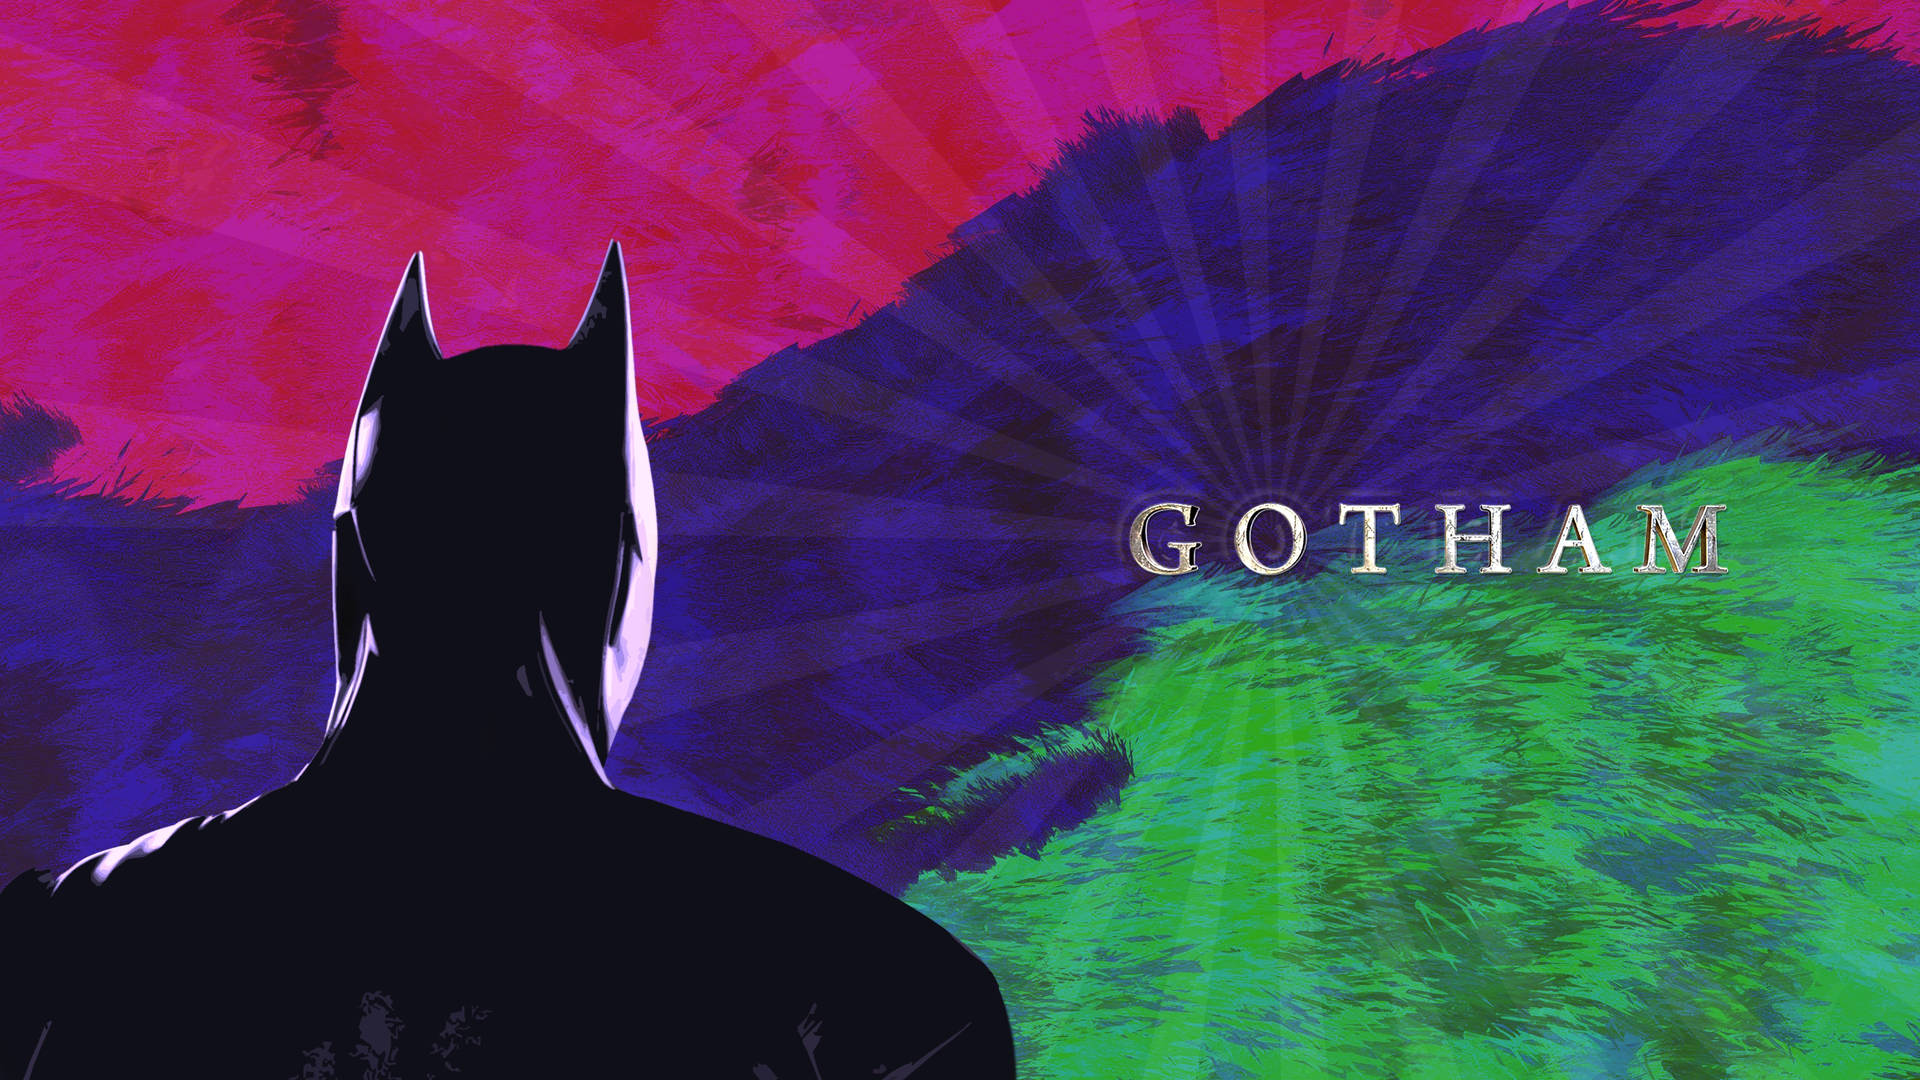 4kfondos De Pantalla De Batman Coloridos En Gotham Para Computadora De Escritorio. Fondo de pantalla